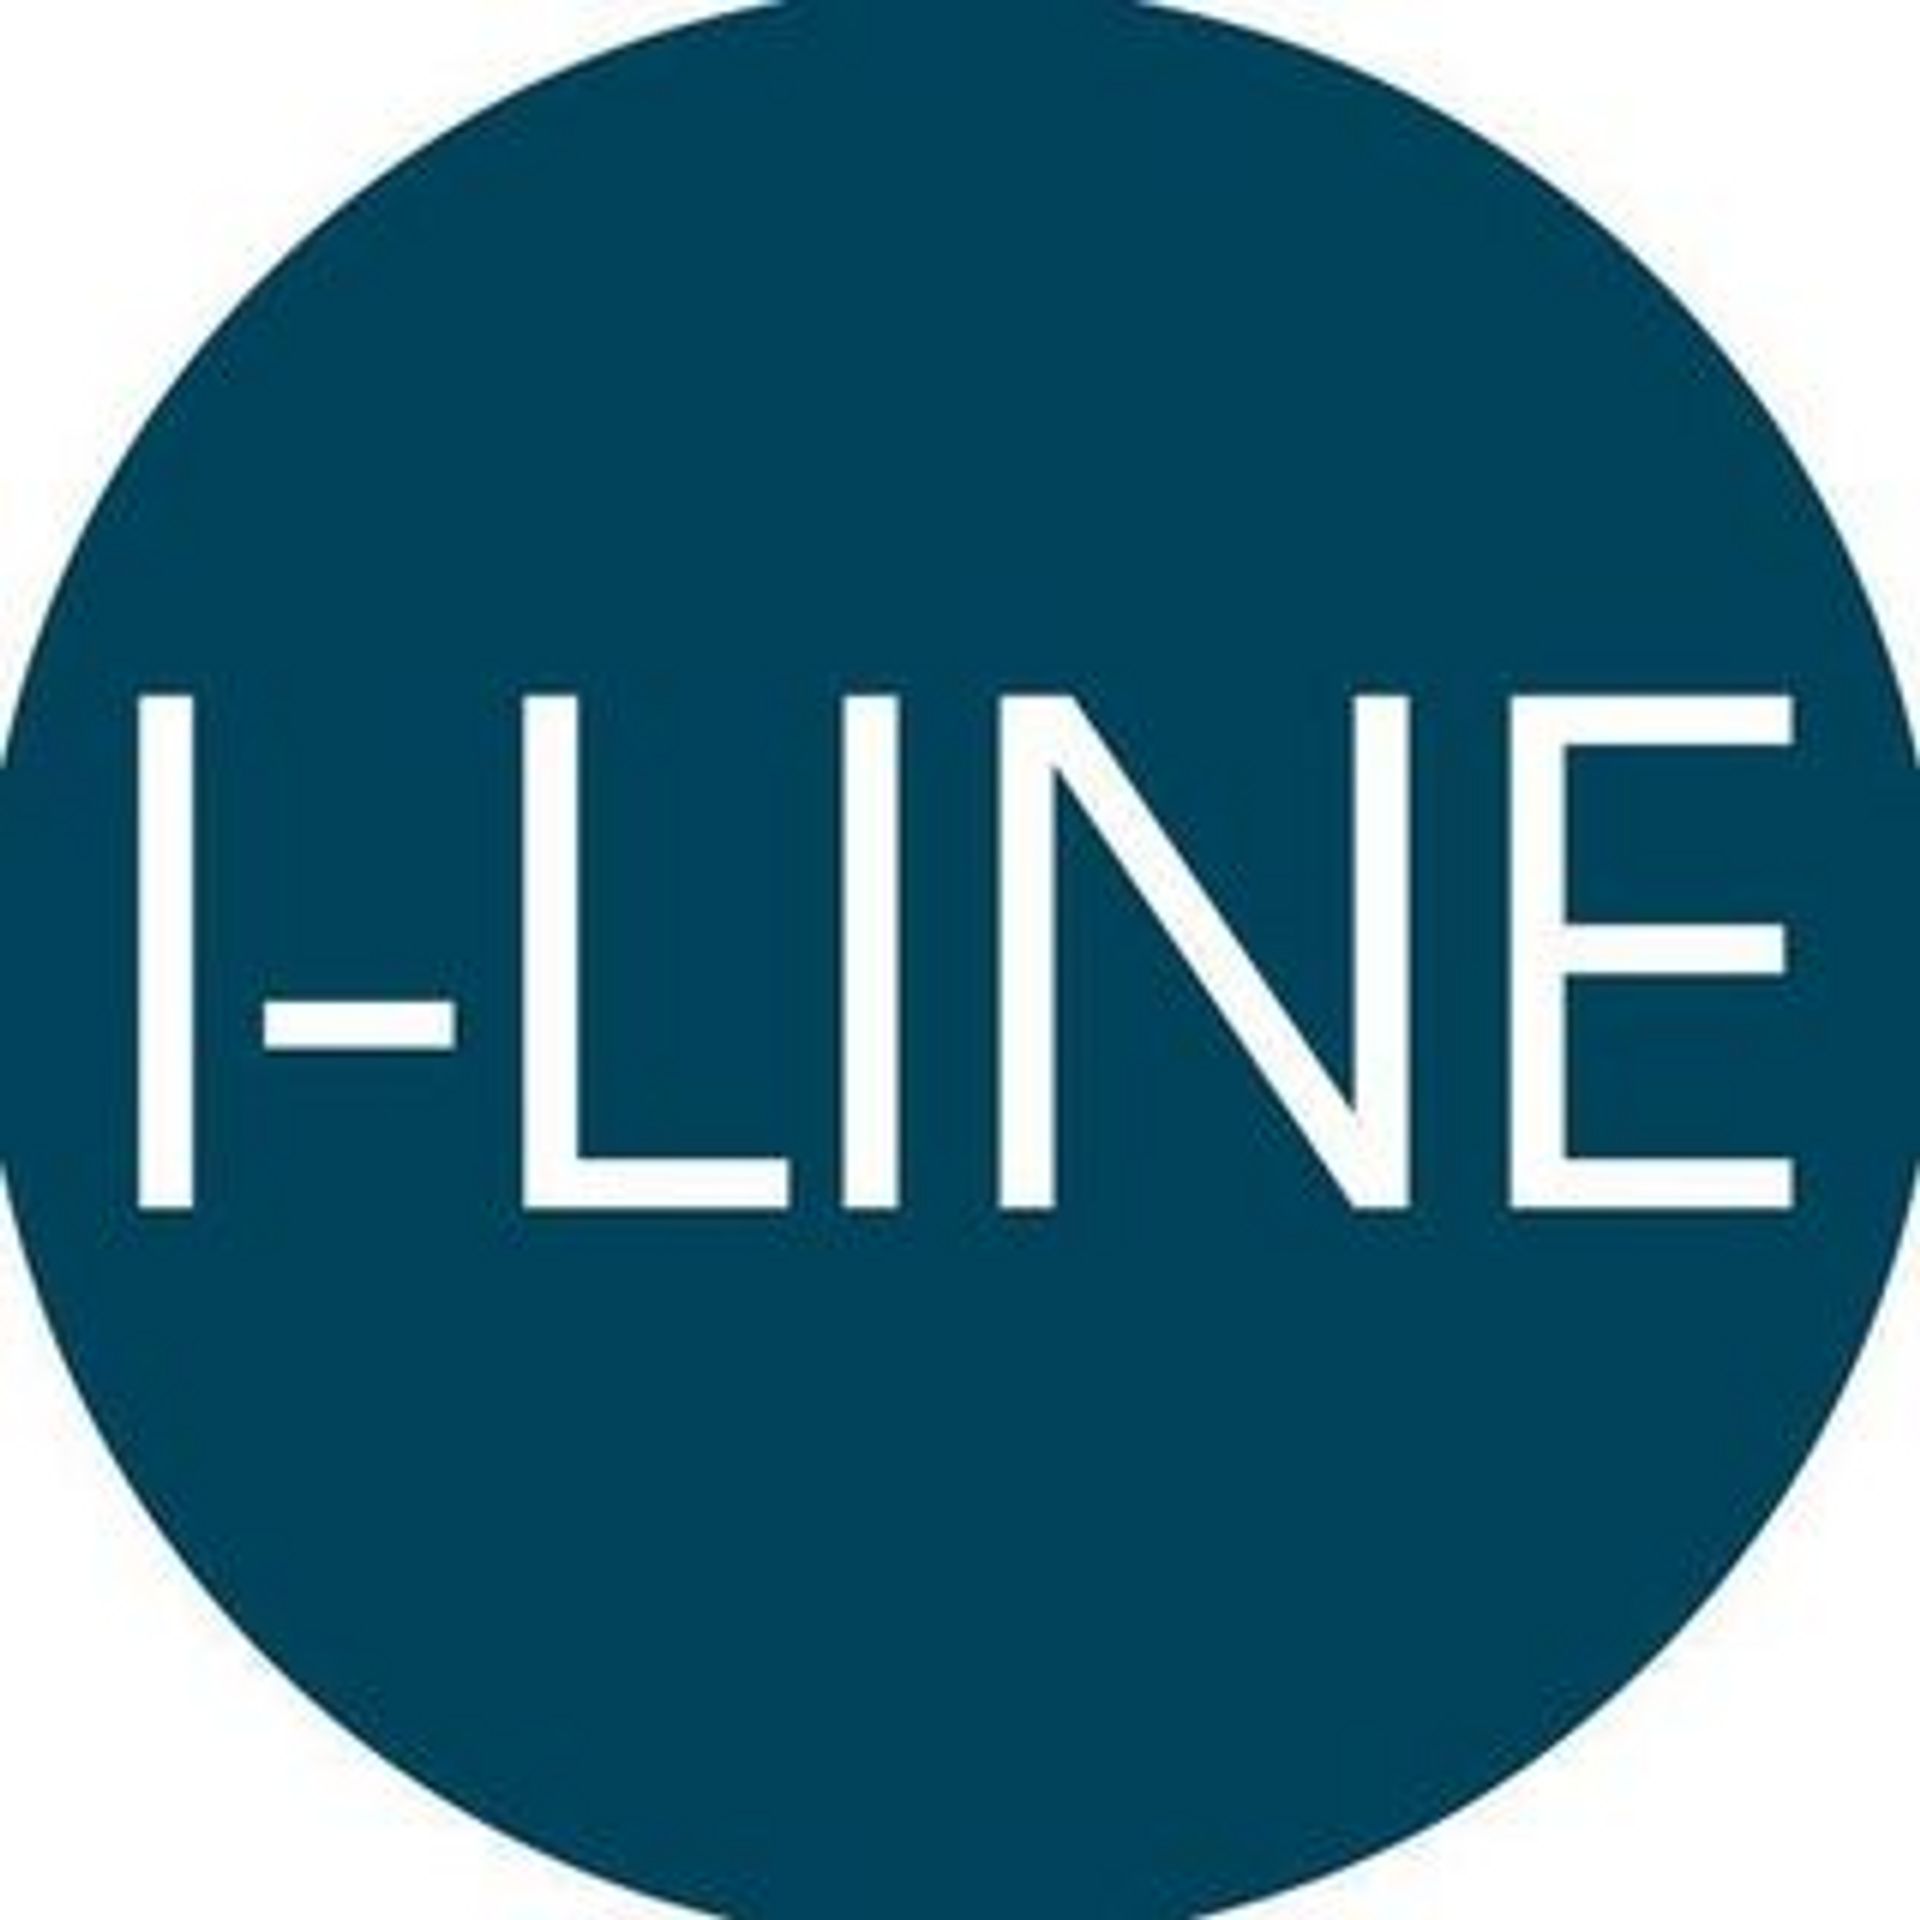 I-Line